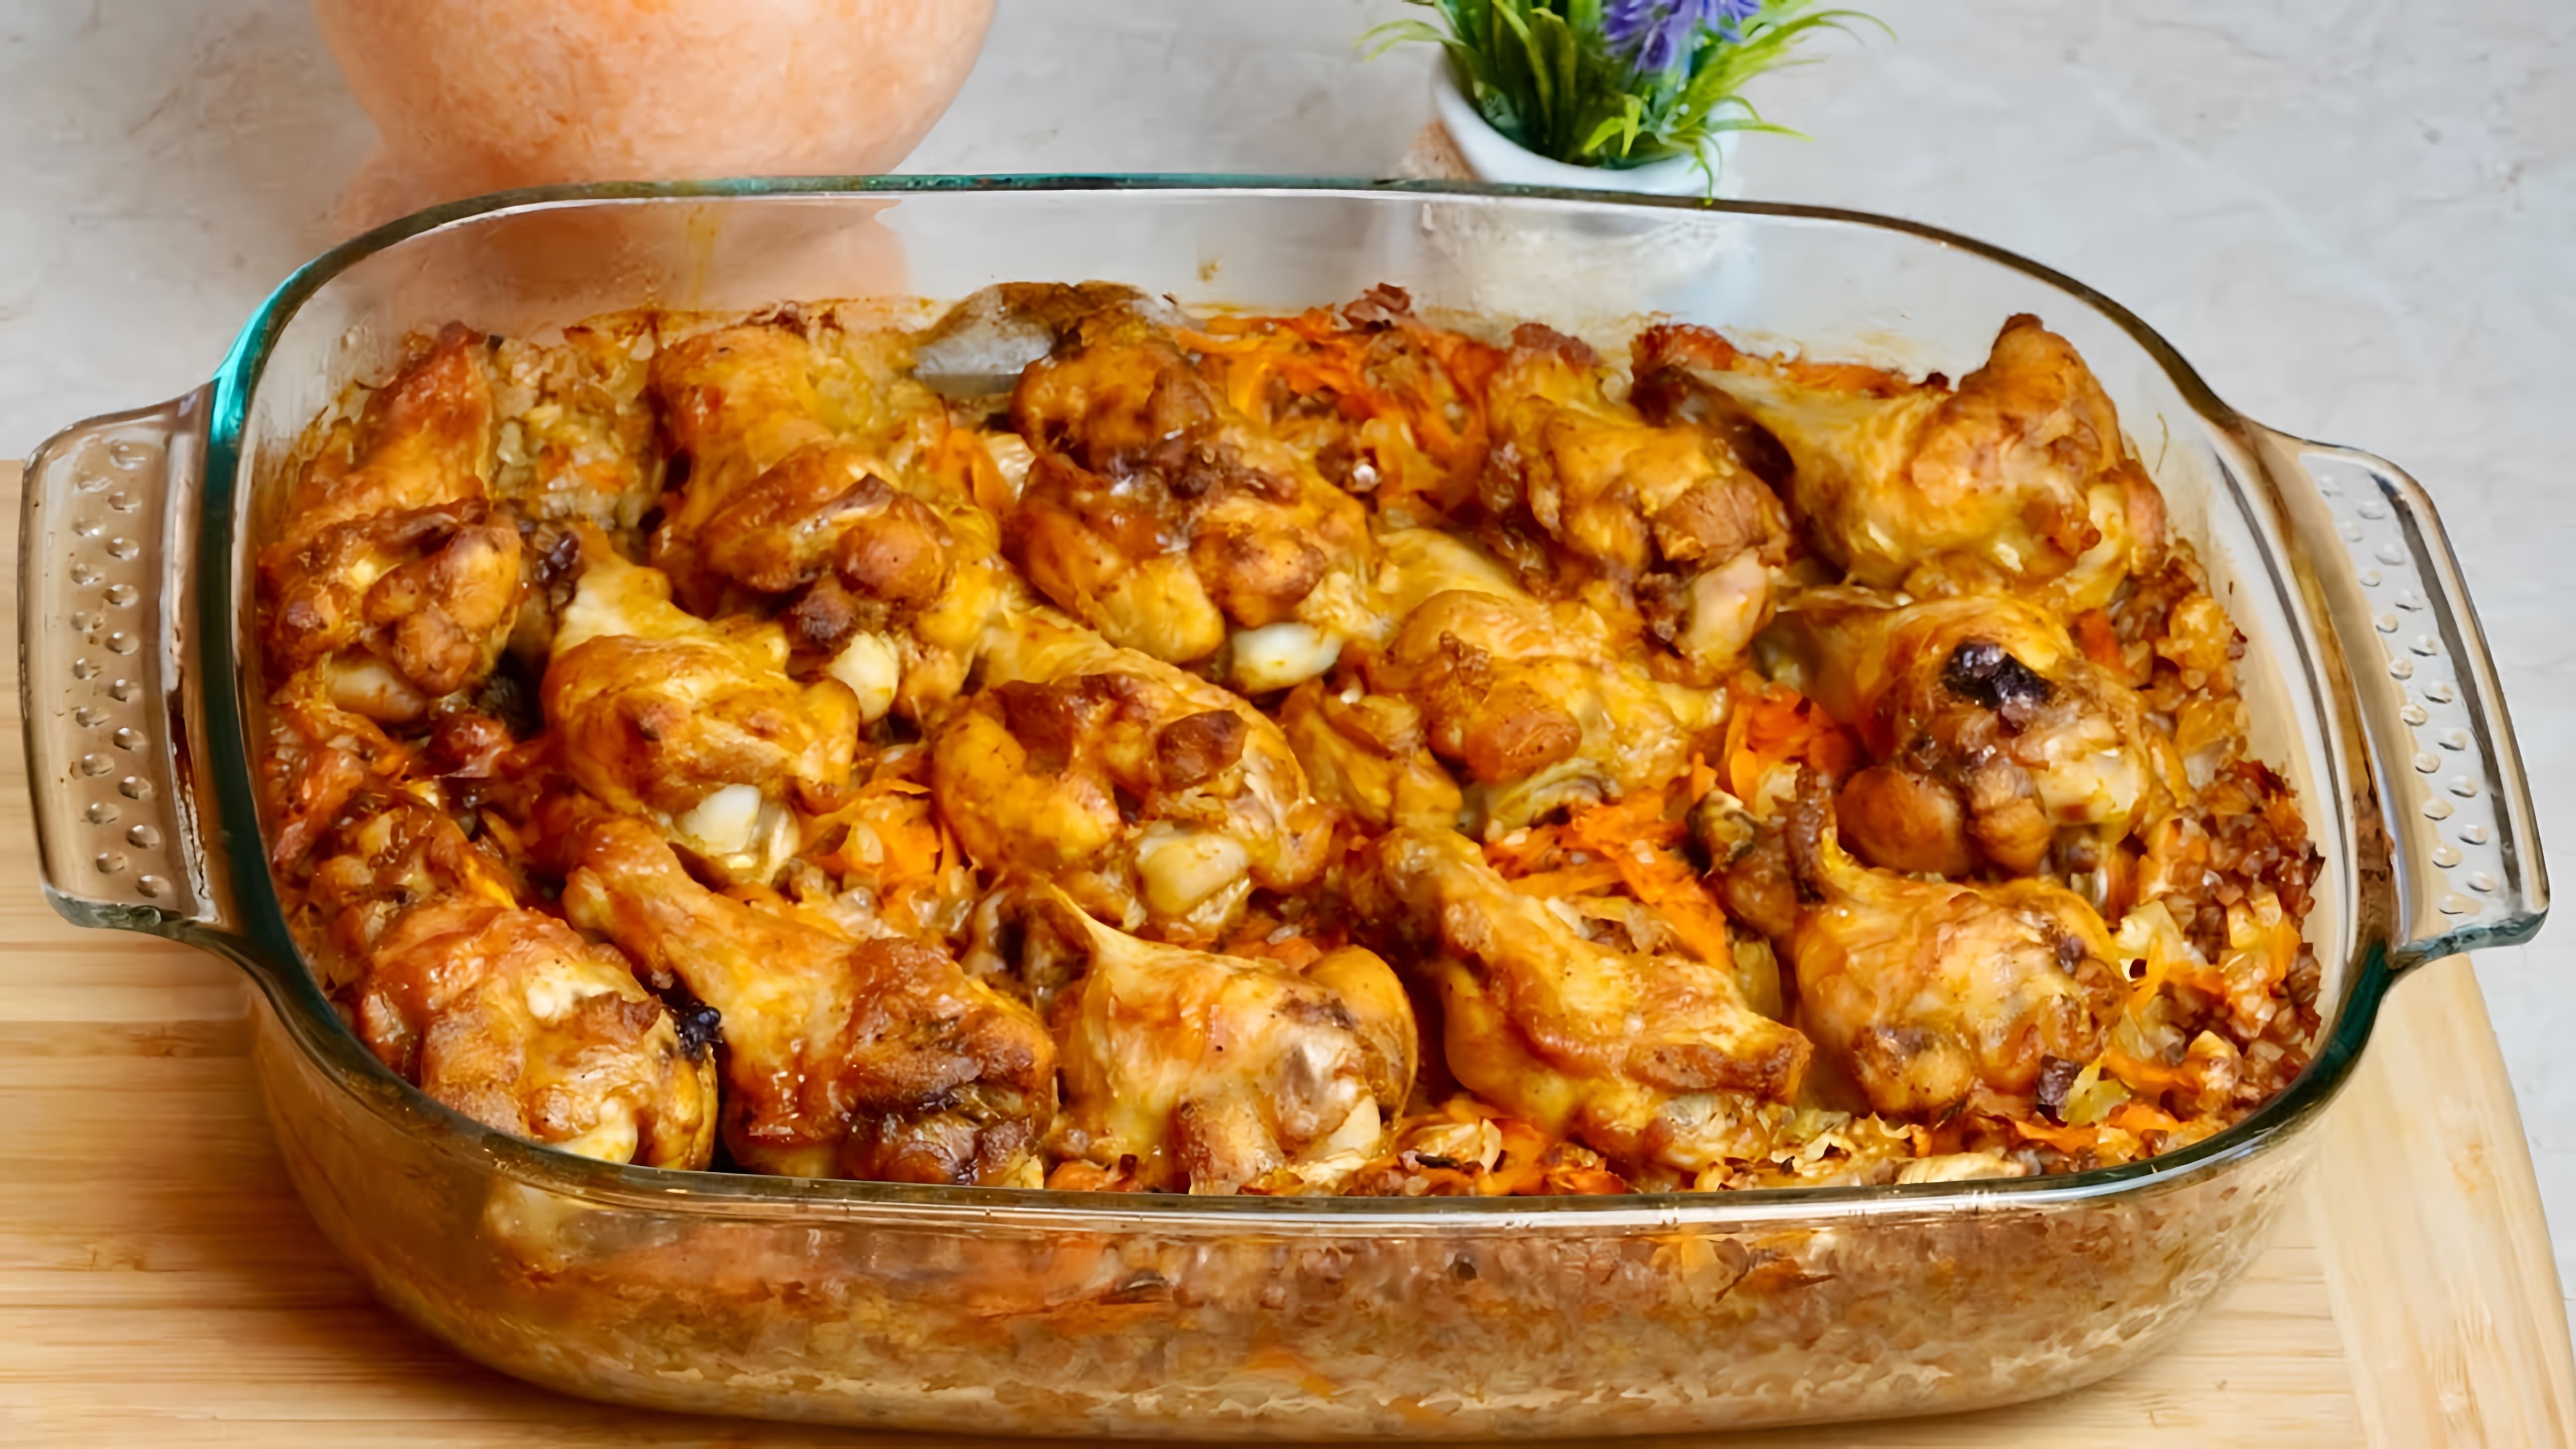 В этом видео демонстрируется рецепт приготовления вкусного блюда из гречки и курицы